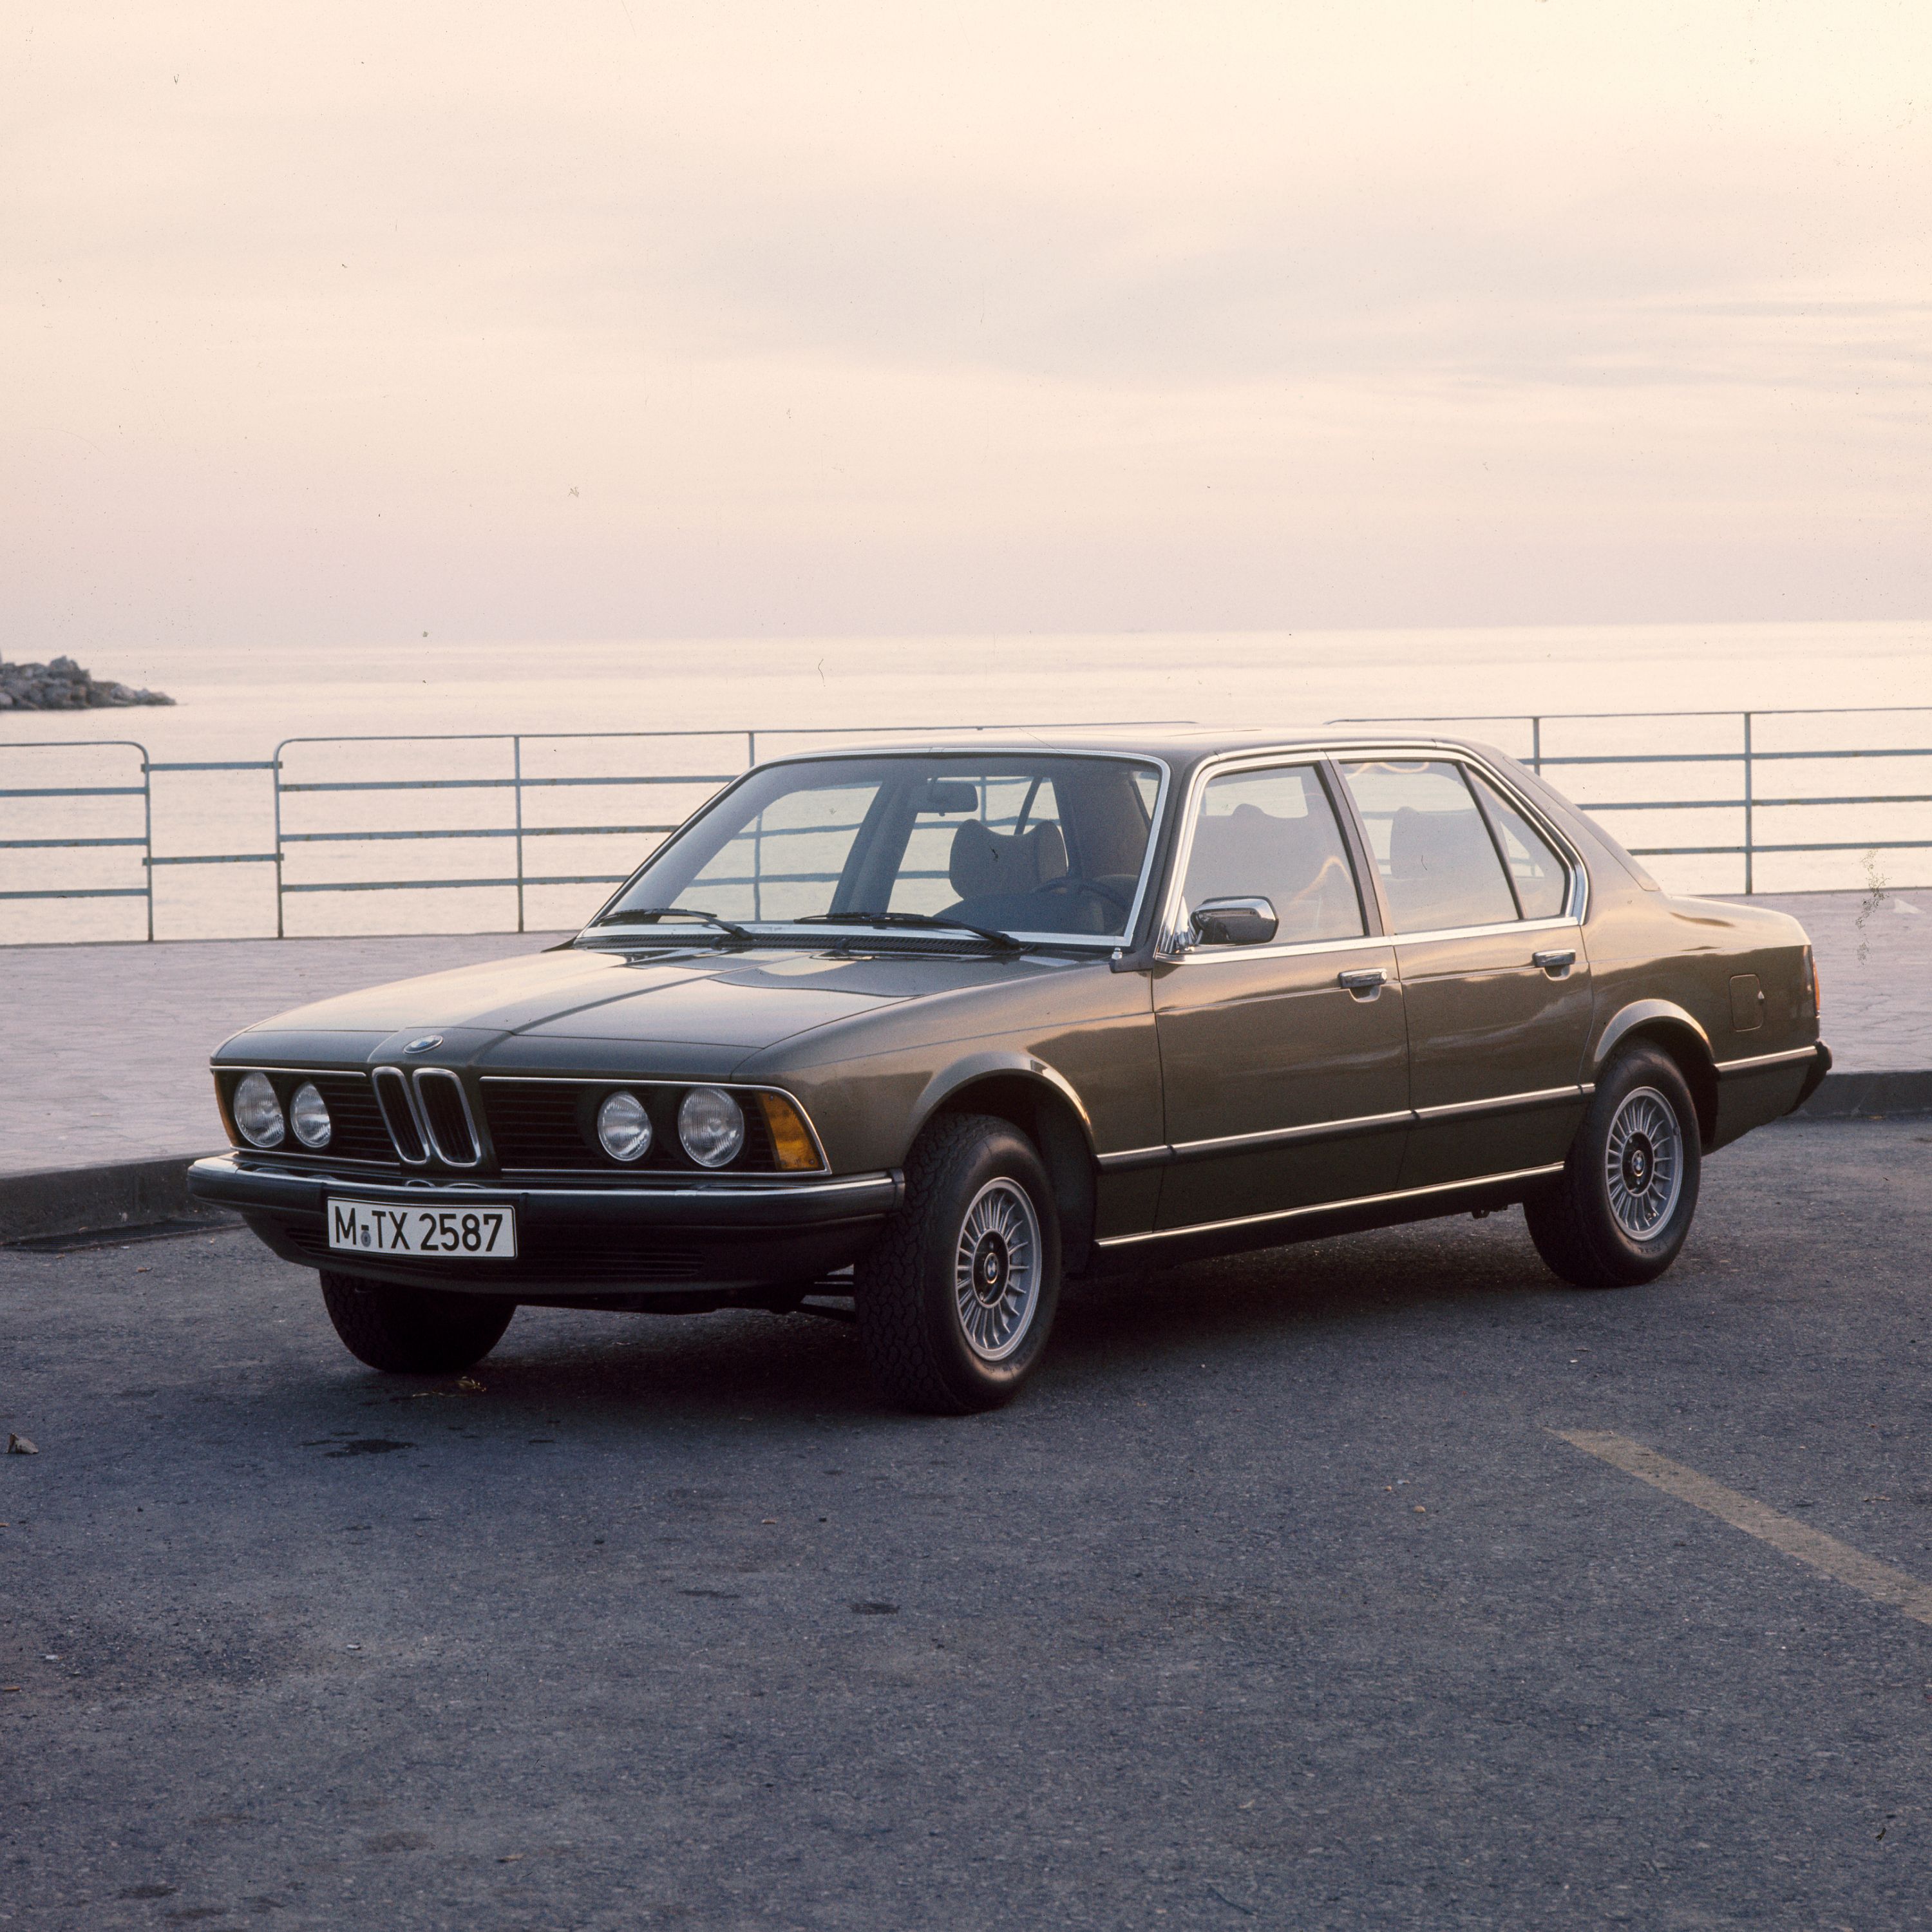 BMW 7er Limousine E23 geparkt am Meer mit einer Steinmole im Hintergrund